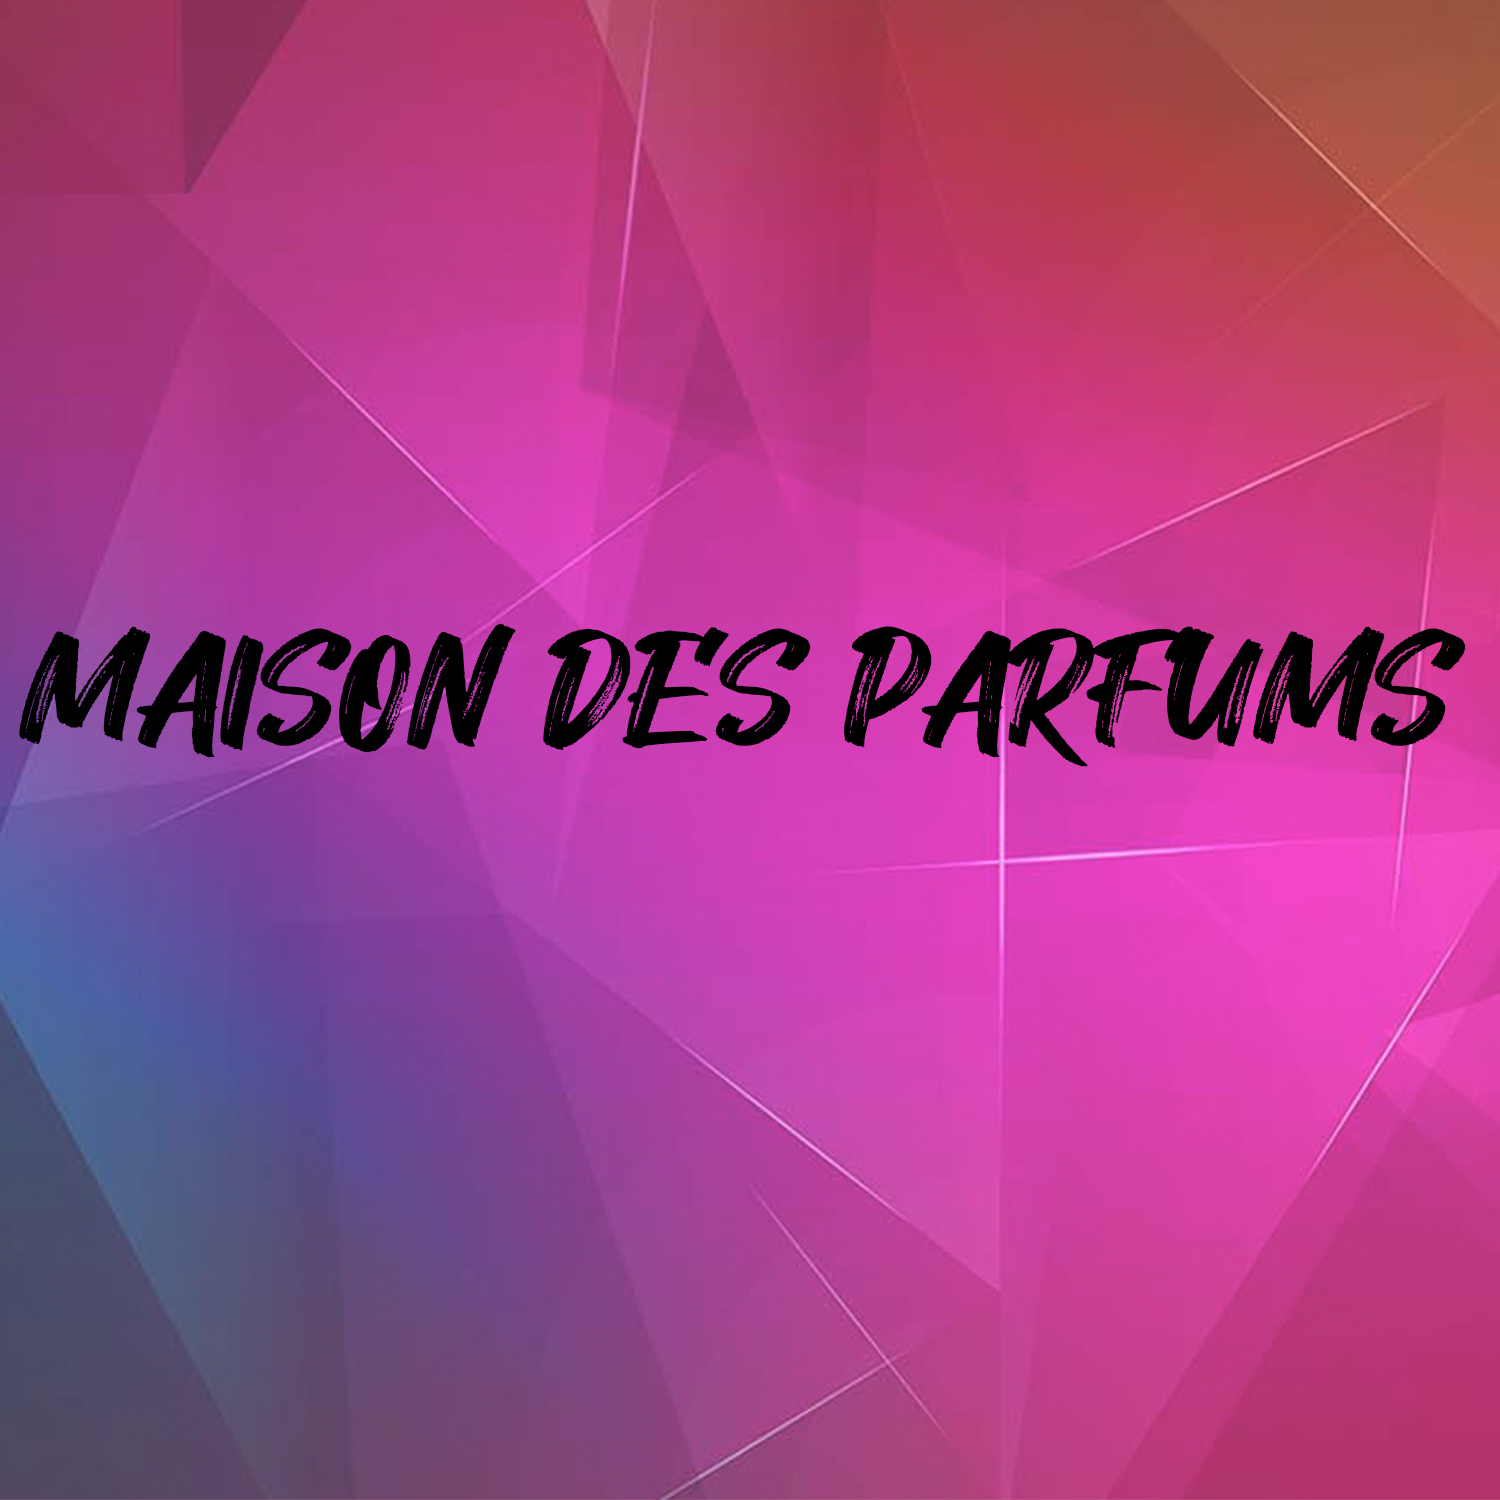 MAISON DES PARFUMS